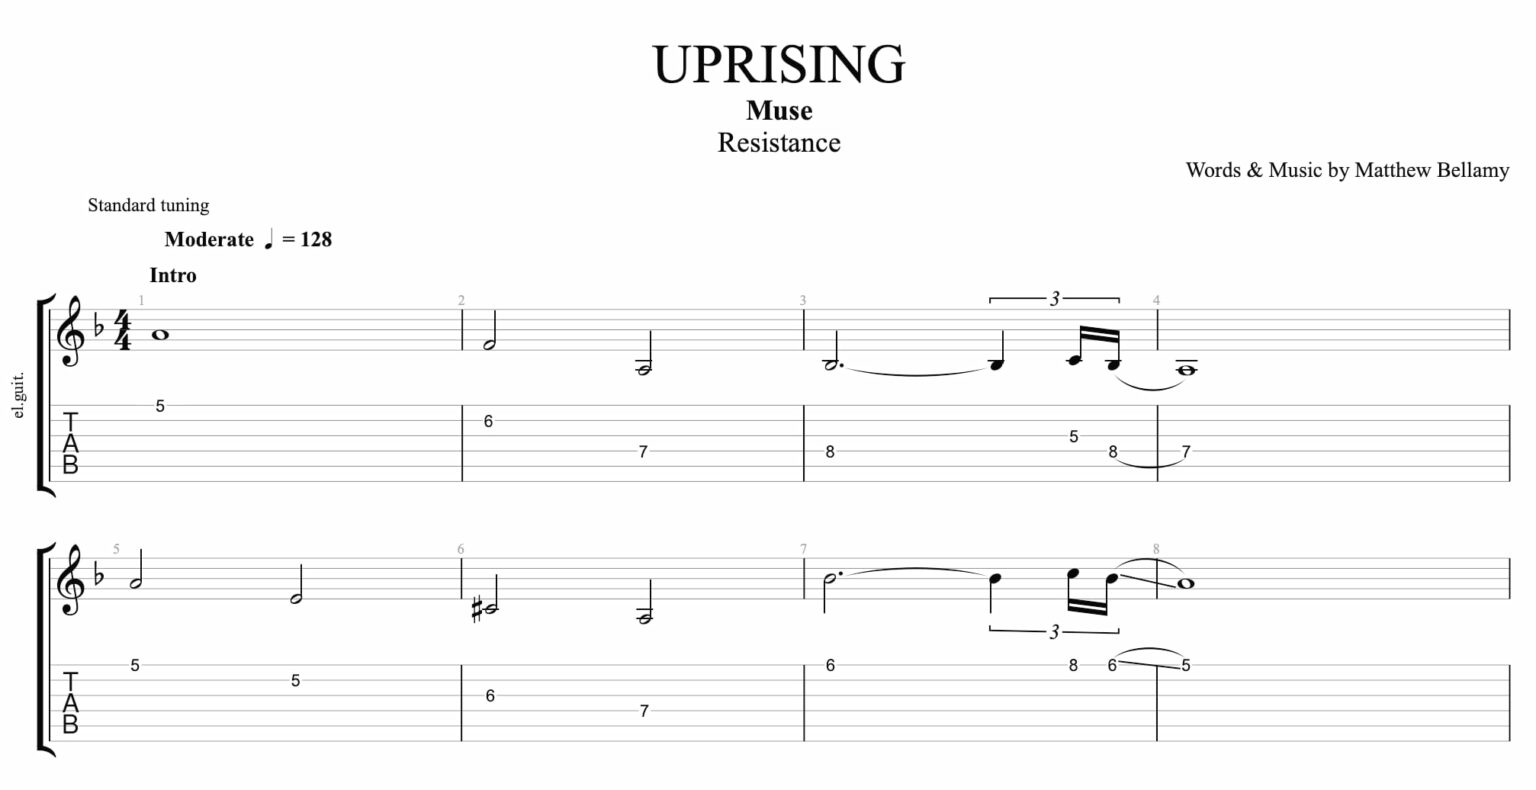 muse uprising guitar pro tab download